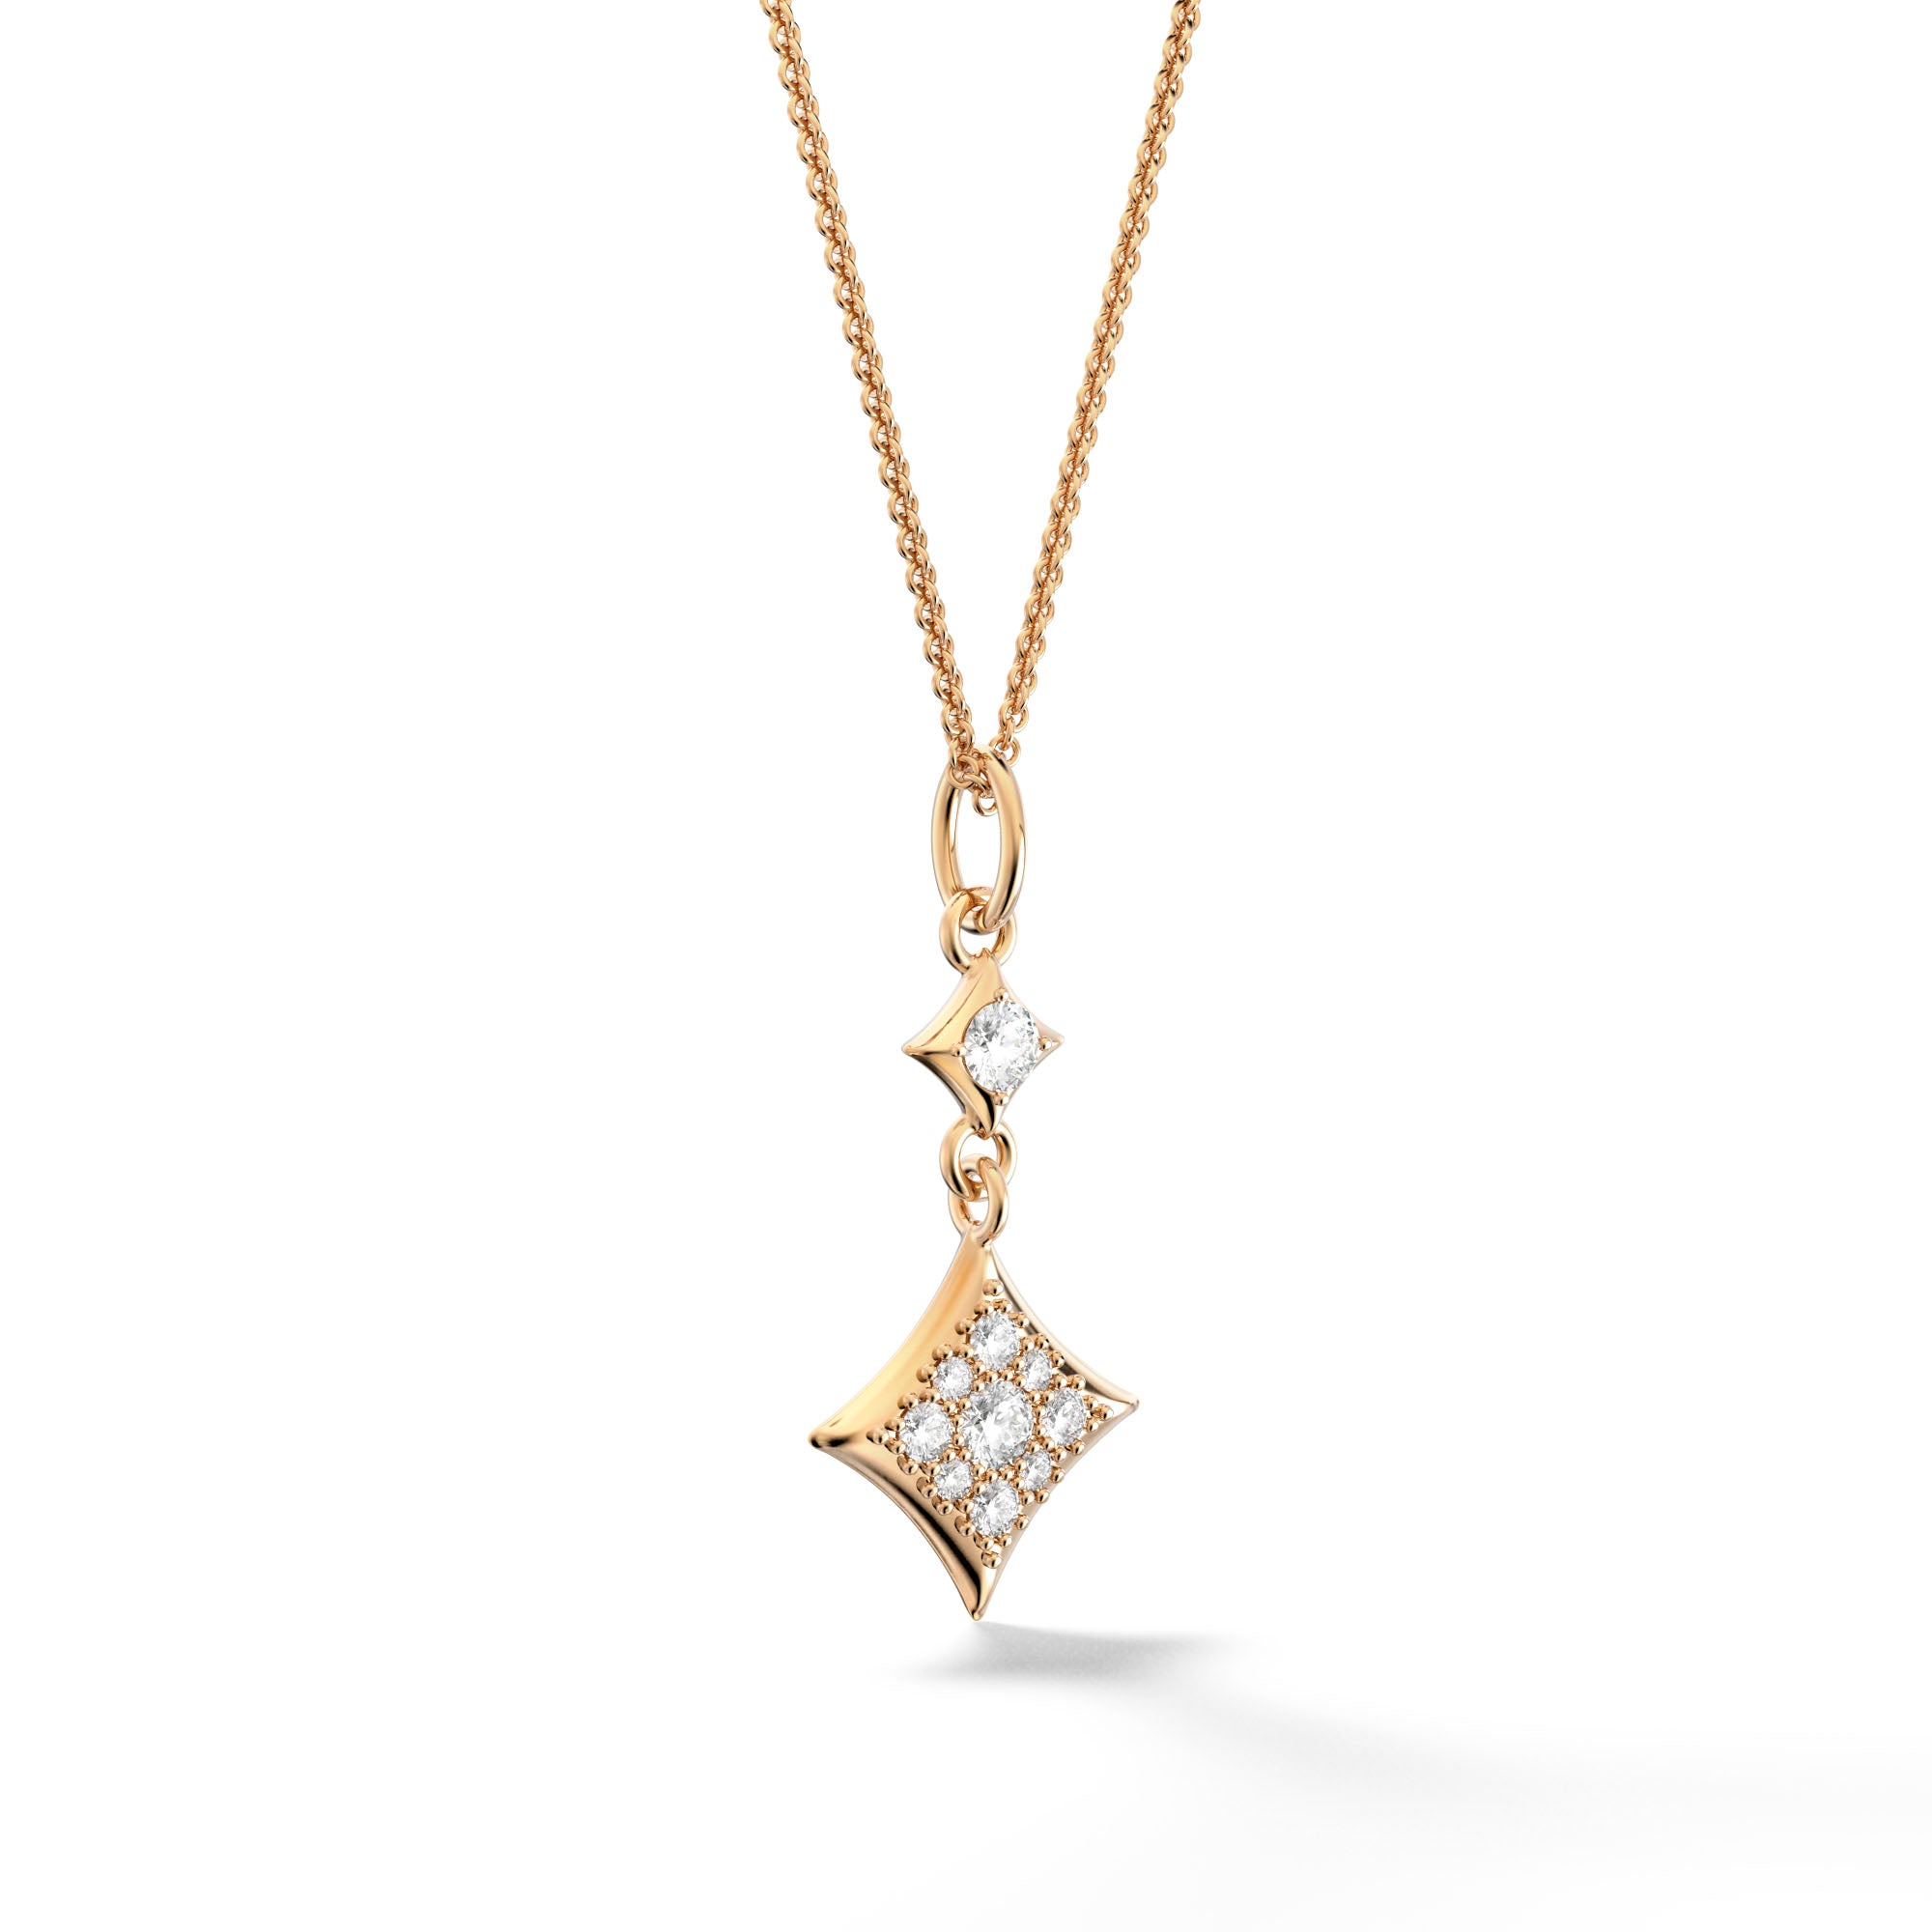 Csillag Stella - Yellow Gold Pendant with Diamonds - Csilla Jewelry